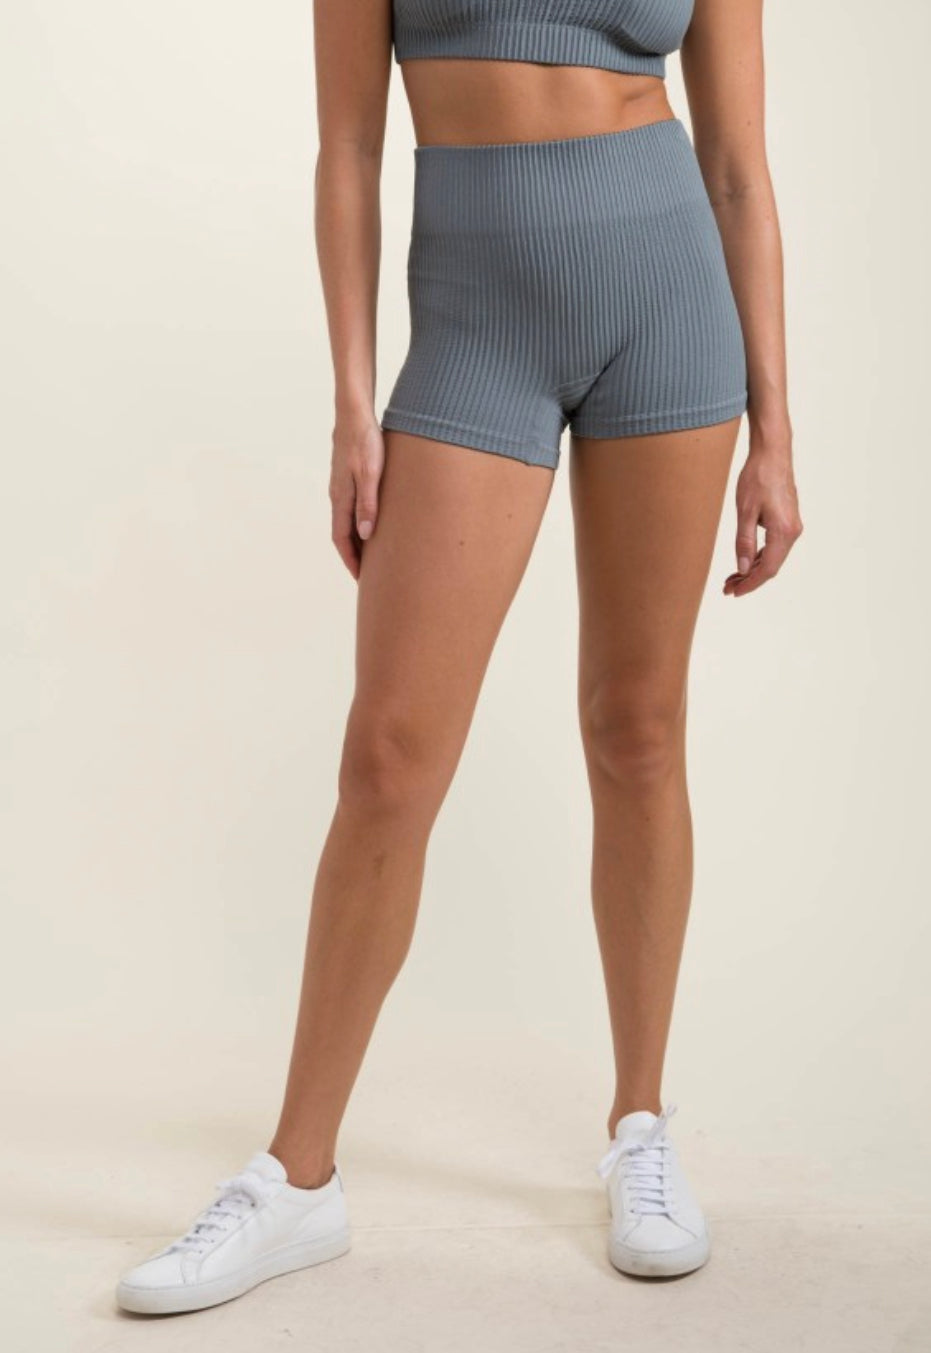 MONO B- Ribbed Seamless High-Waisted Short Shorts